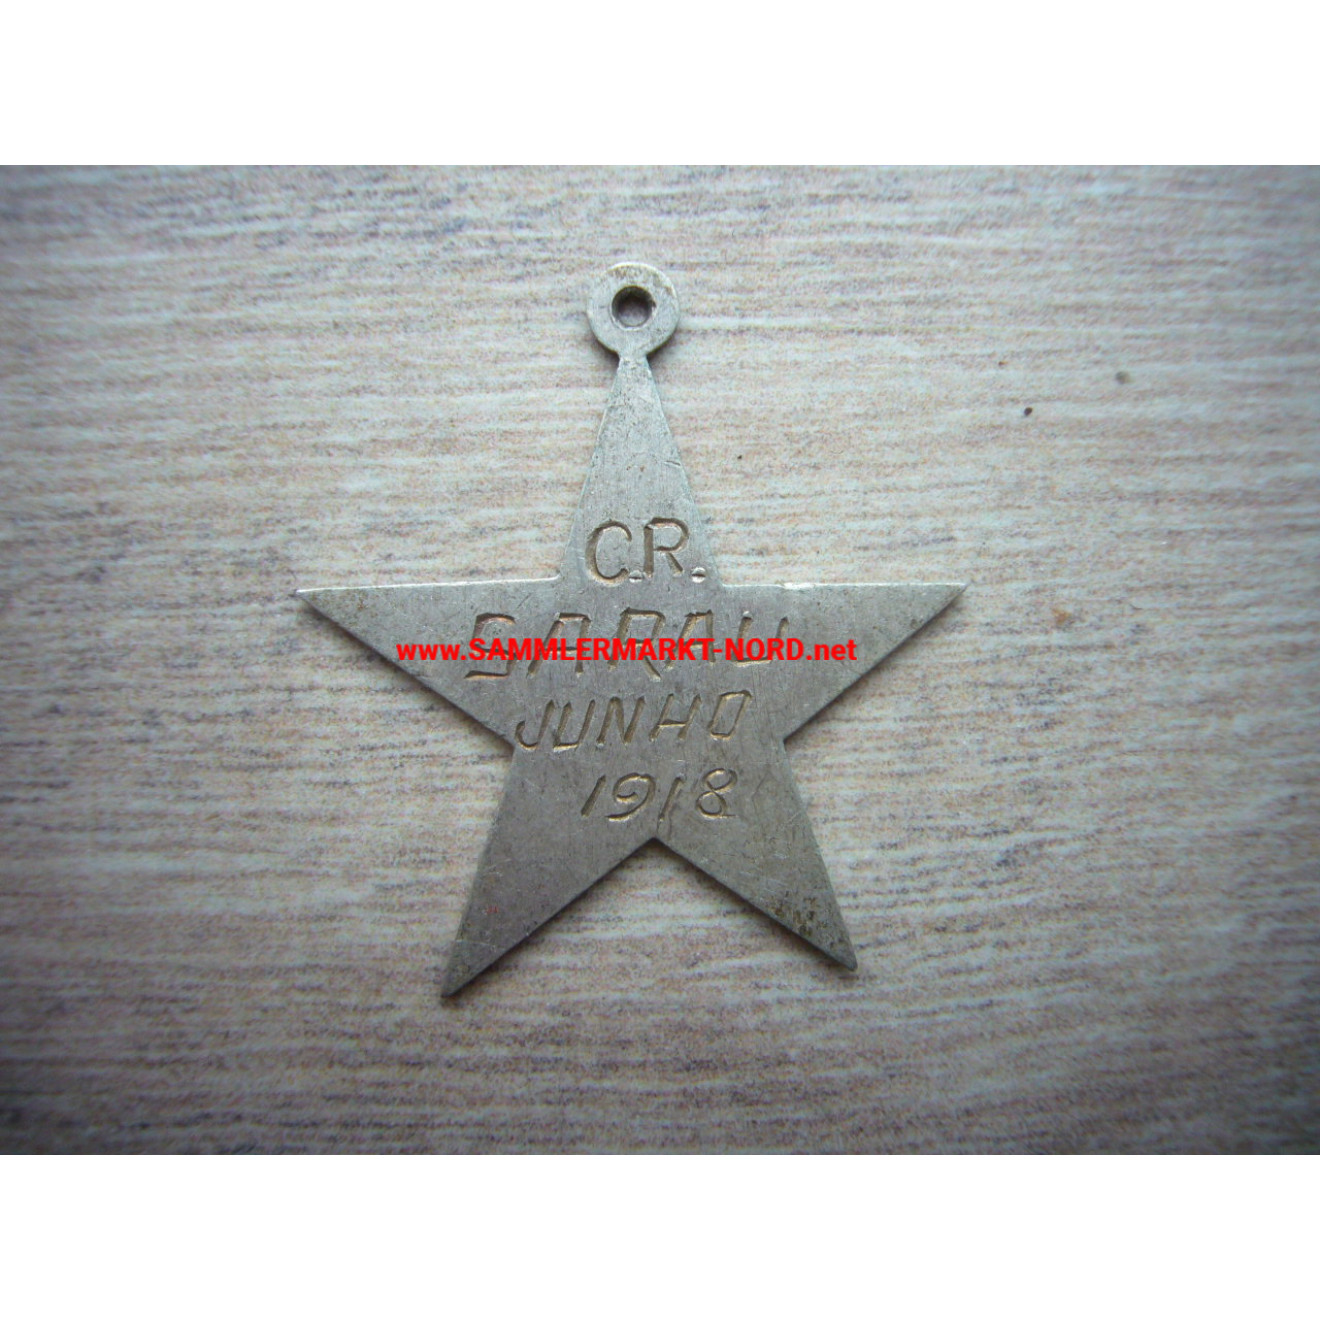 C. R. SARAU, Junho 1918 - Star pendant